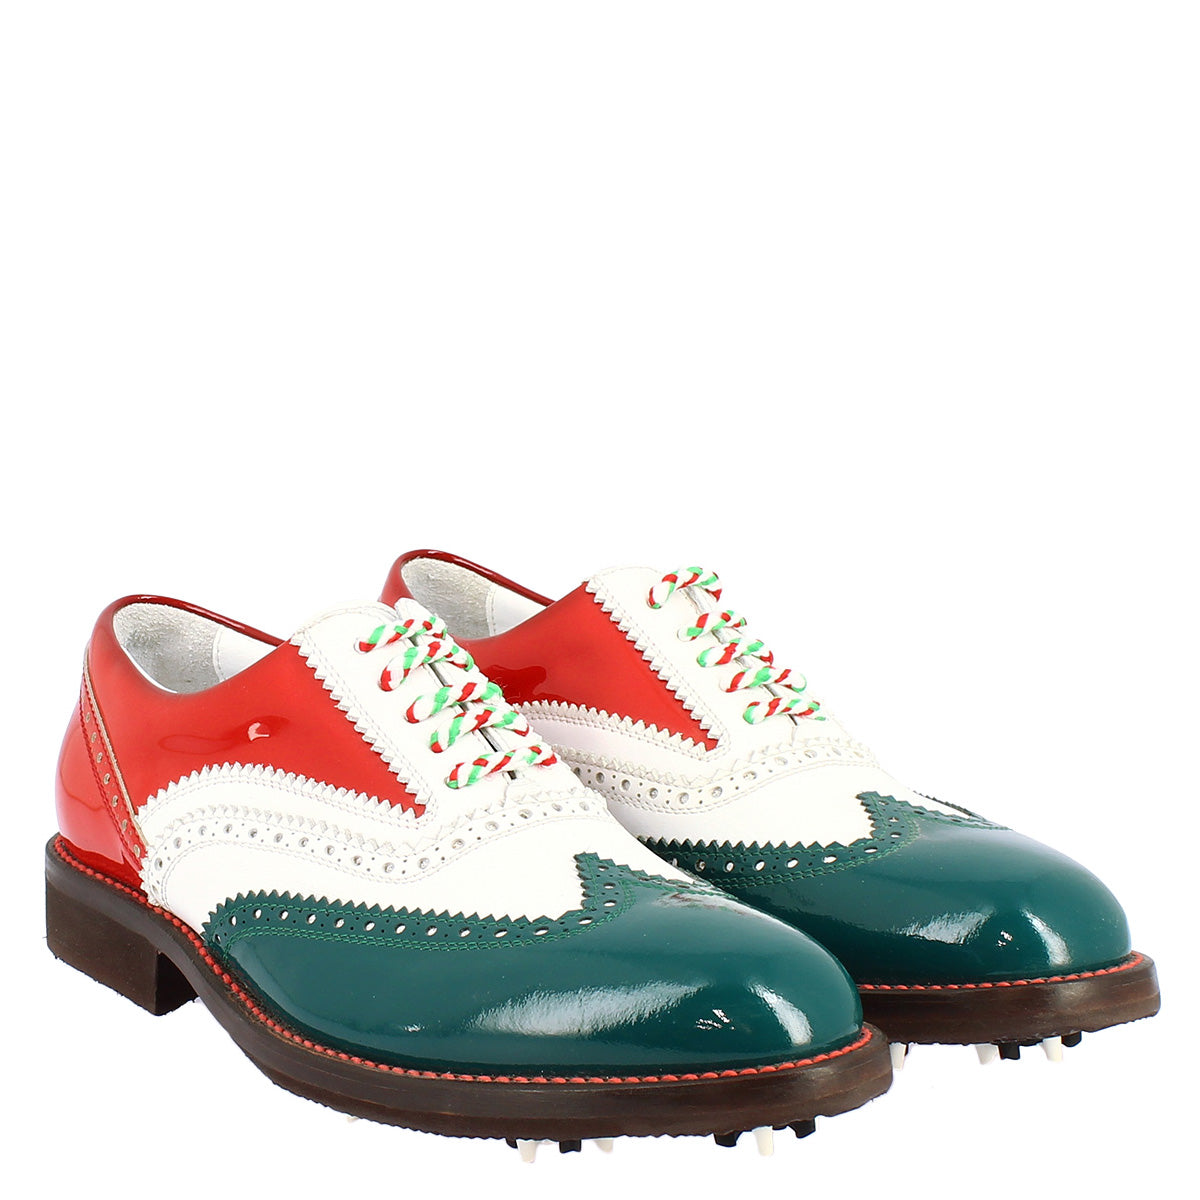 Scarpe golf uomo fatte a mano nei colori della bandiera italiana